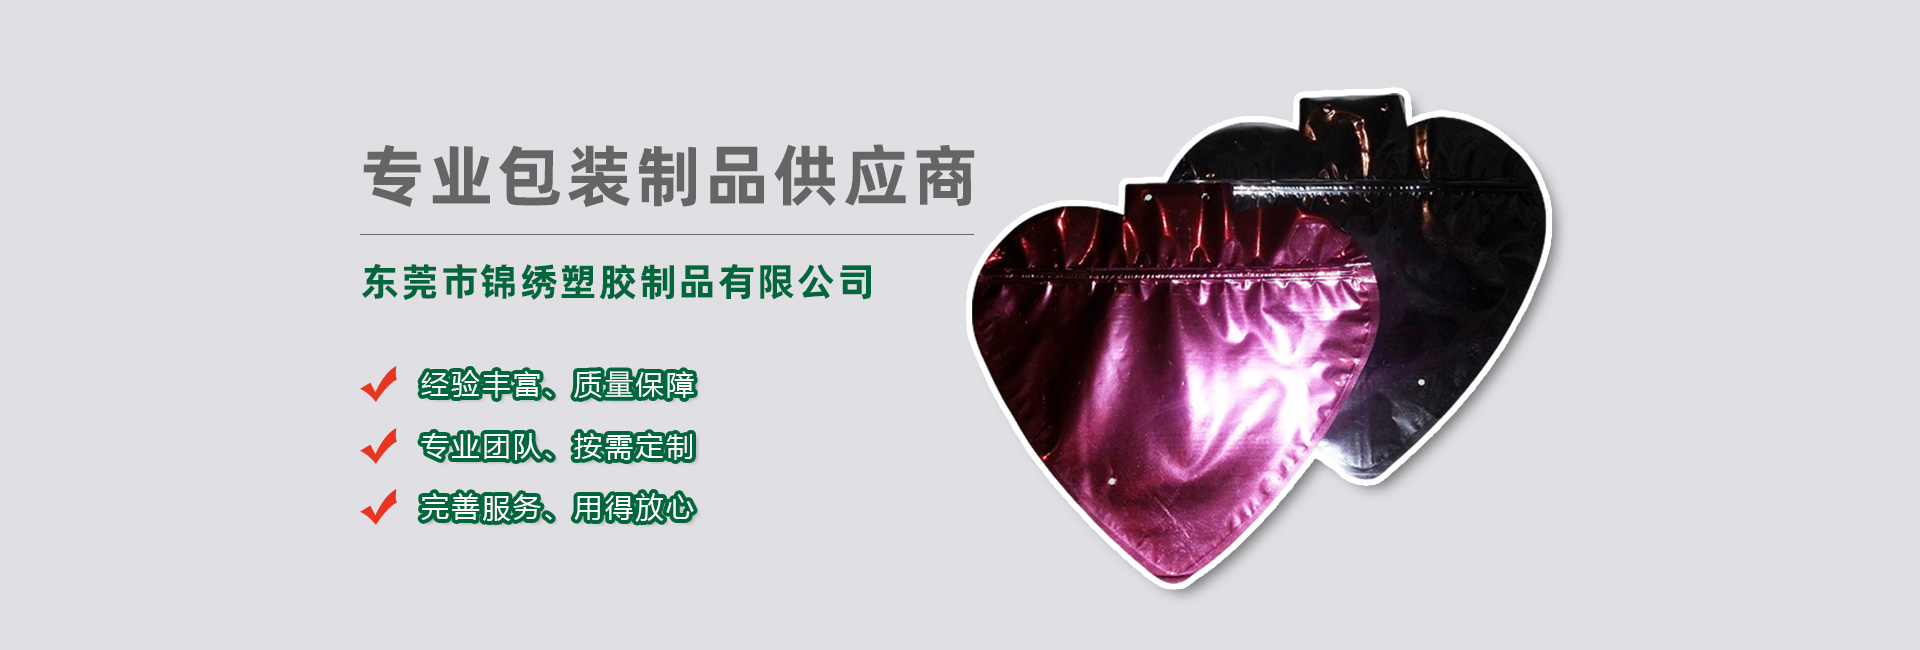 巫山食品袋banner